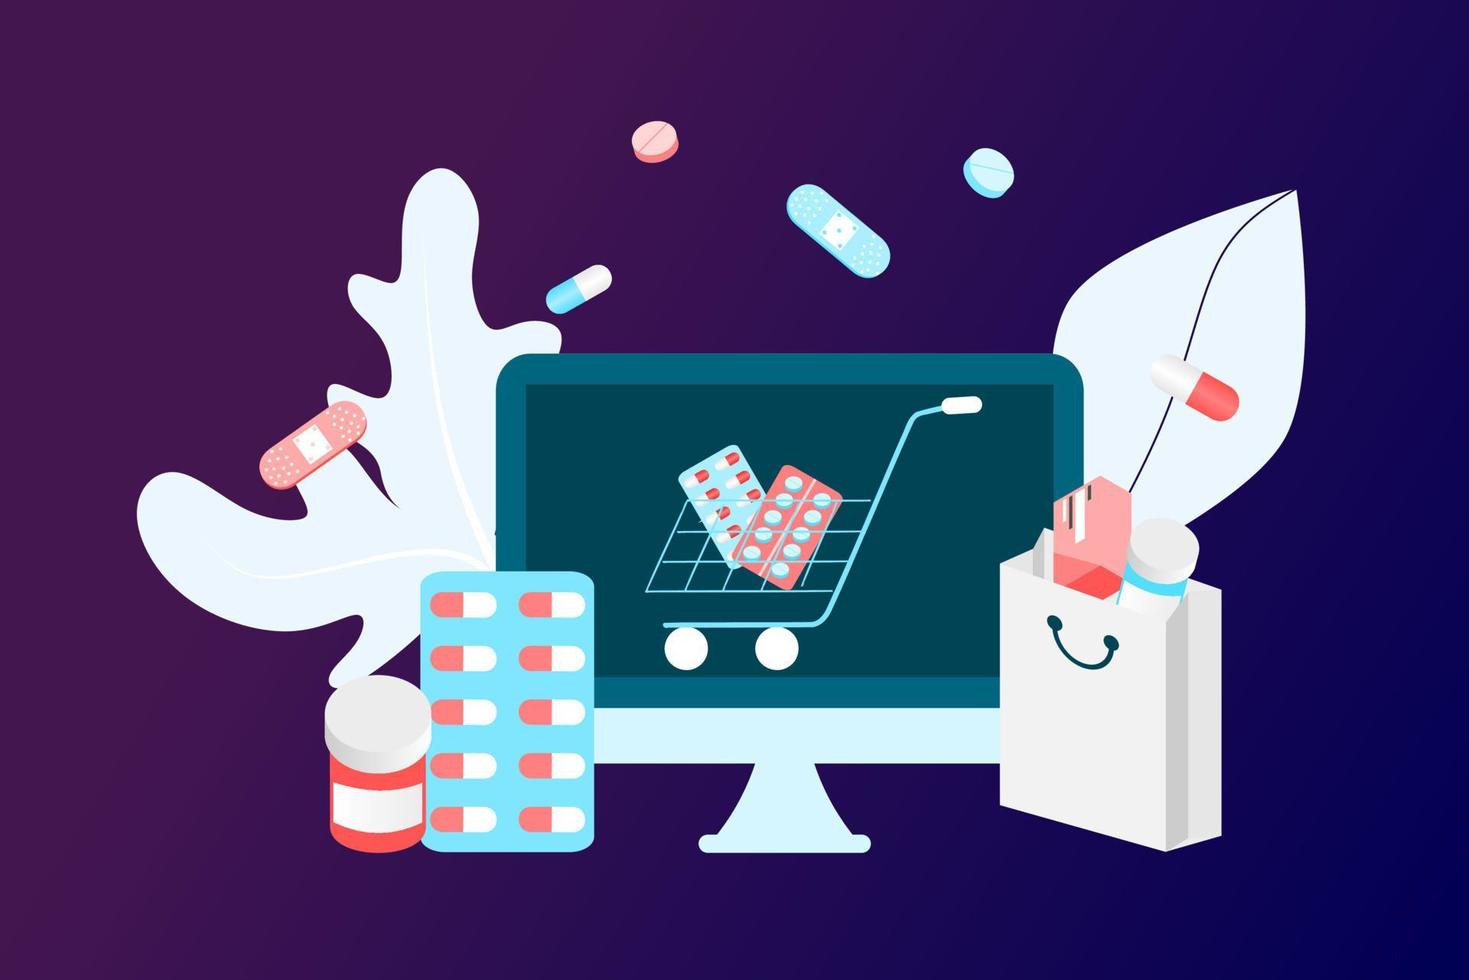 onlineapotek app koncept för sjukvård, apotek och e-handel. vektorillustration av receptbelagda läkemedel, första hjälpen-kit och medicinska förnödenheter som säljs online via webben eller datorteknik. vektor